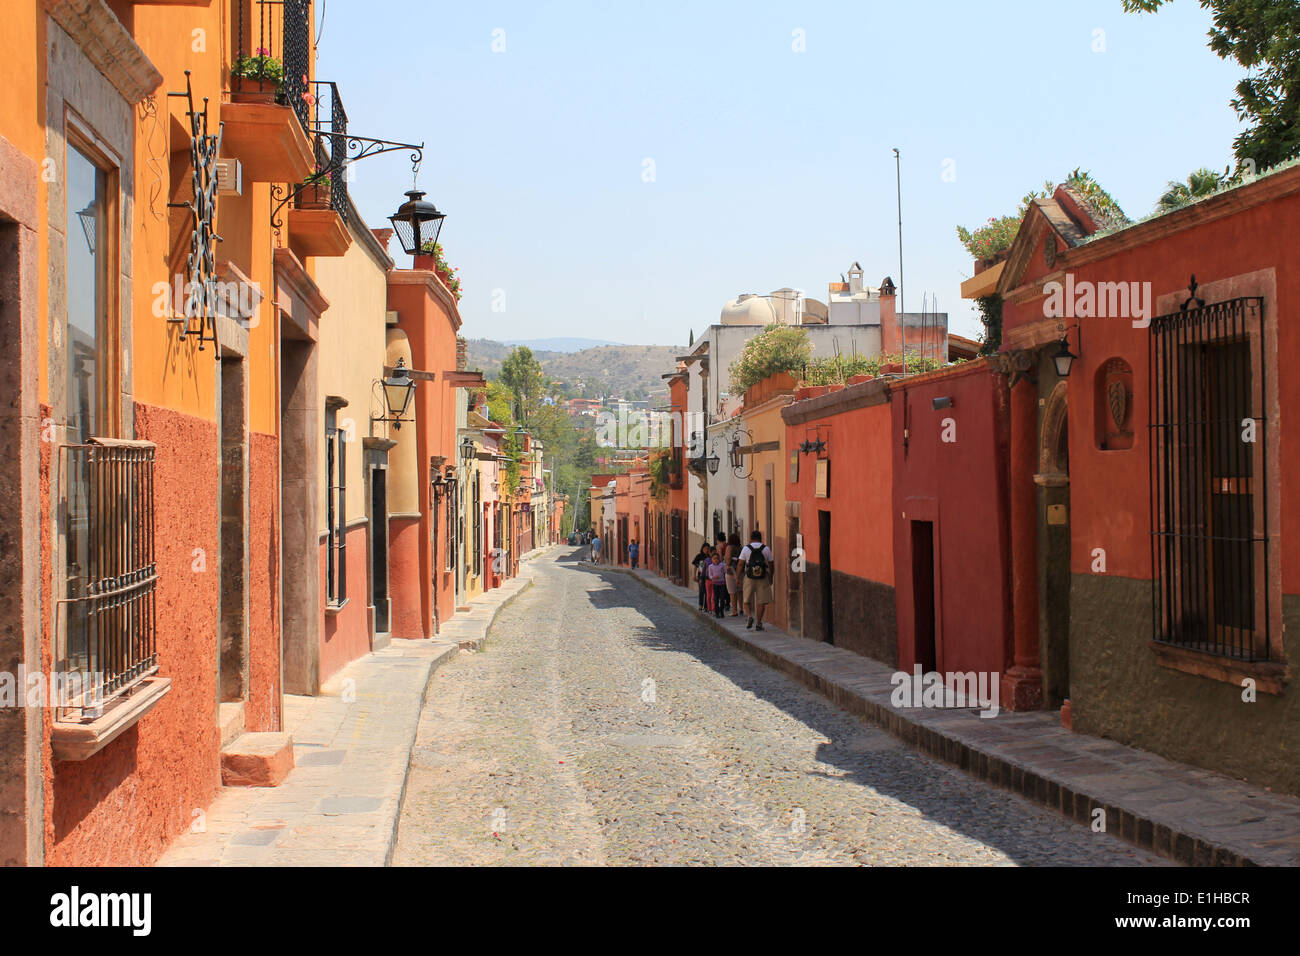 Maisons colorées bordant une rue pavée à San Miguel de Allende, Guanajuato, Mexique Banque D'Images